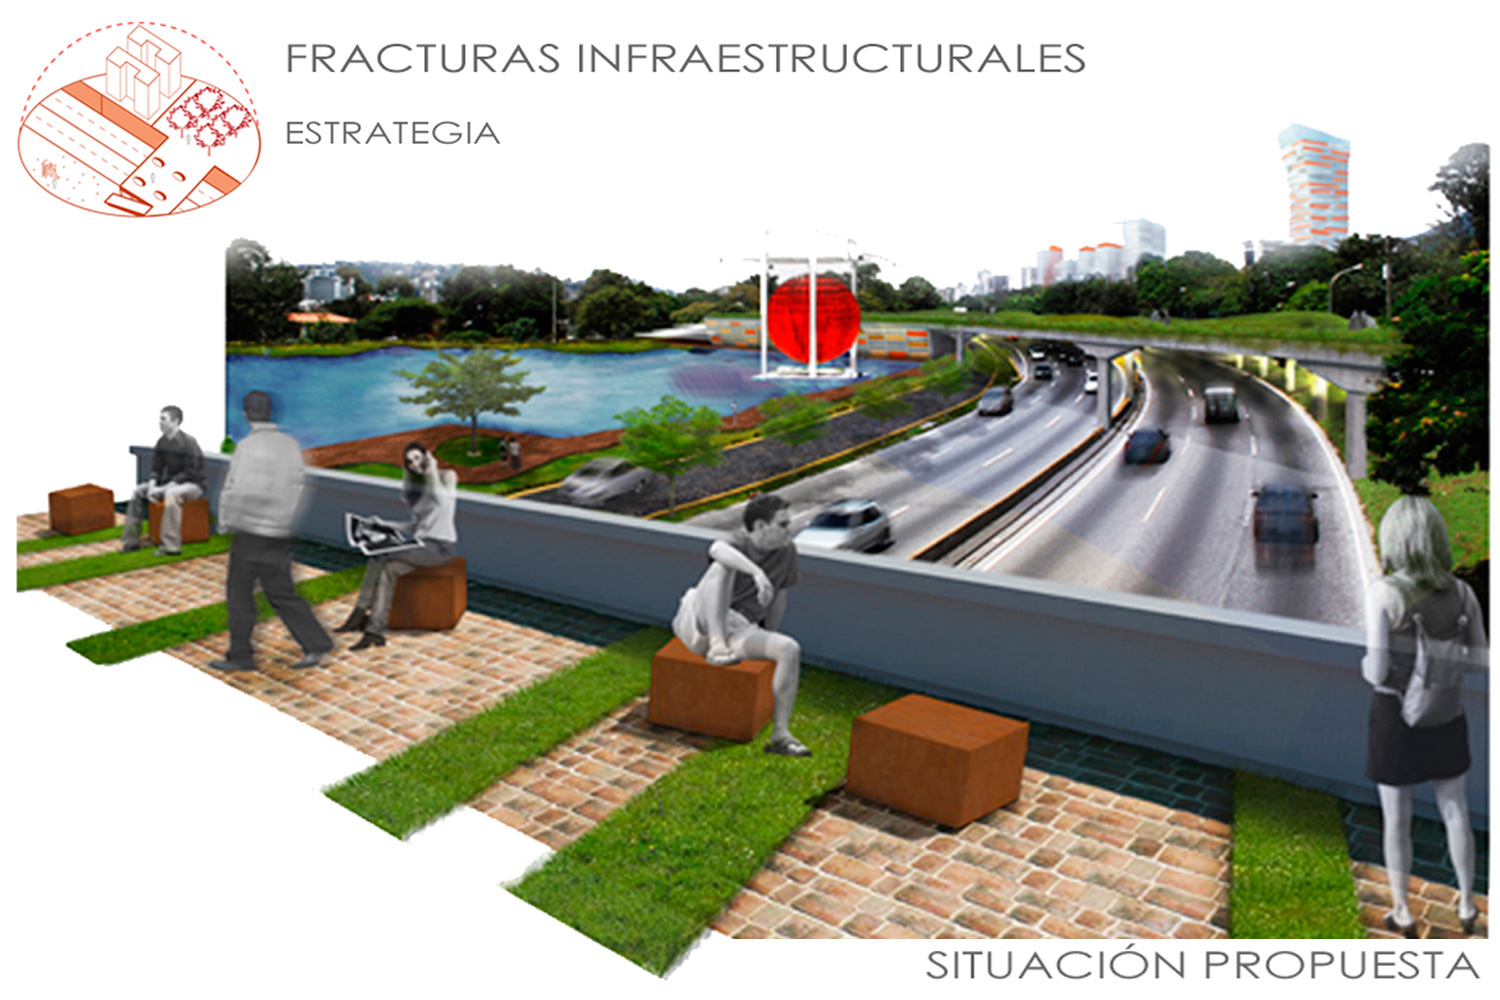 Fractura infraestructura prupuesta - CLC